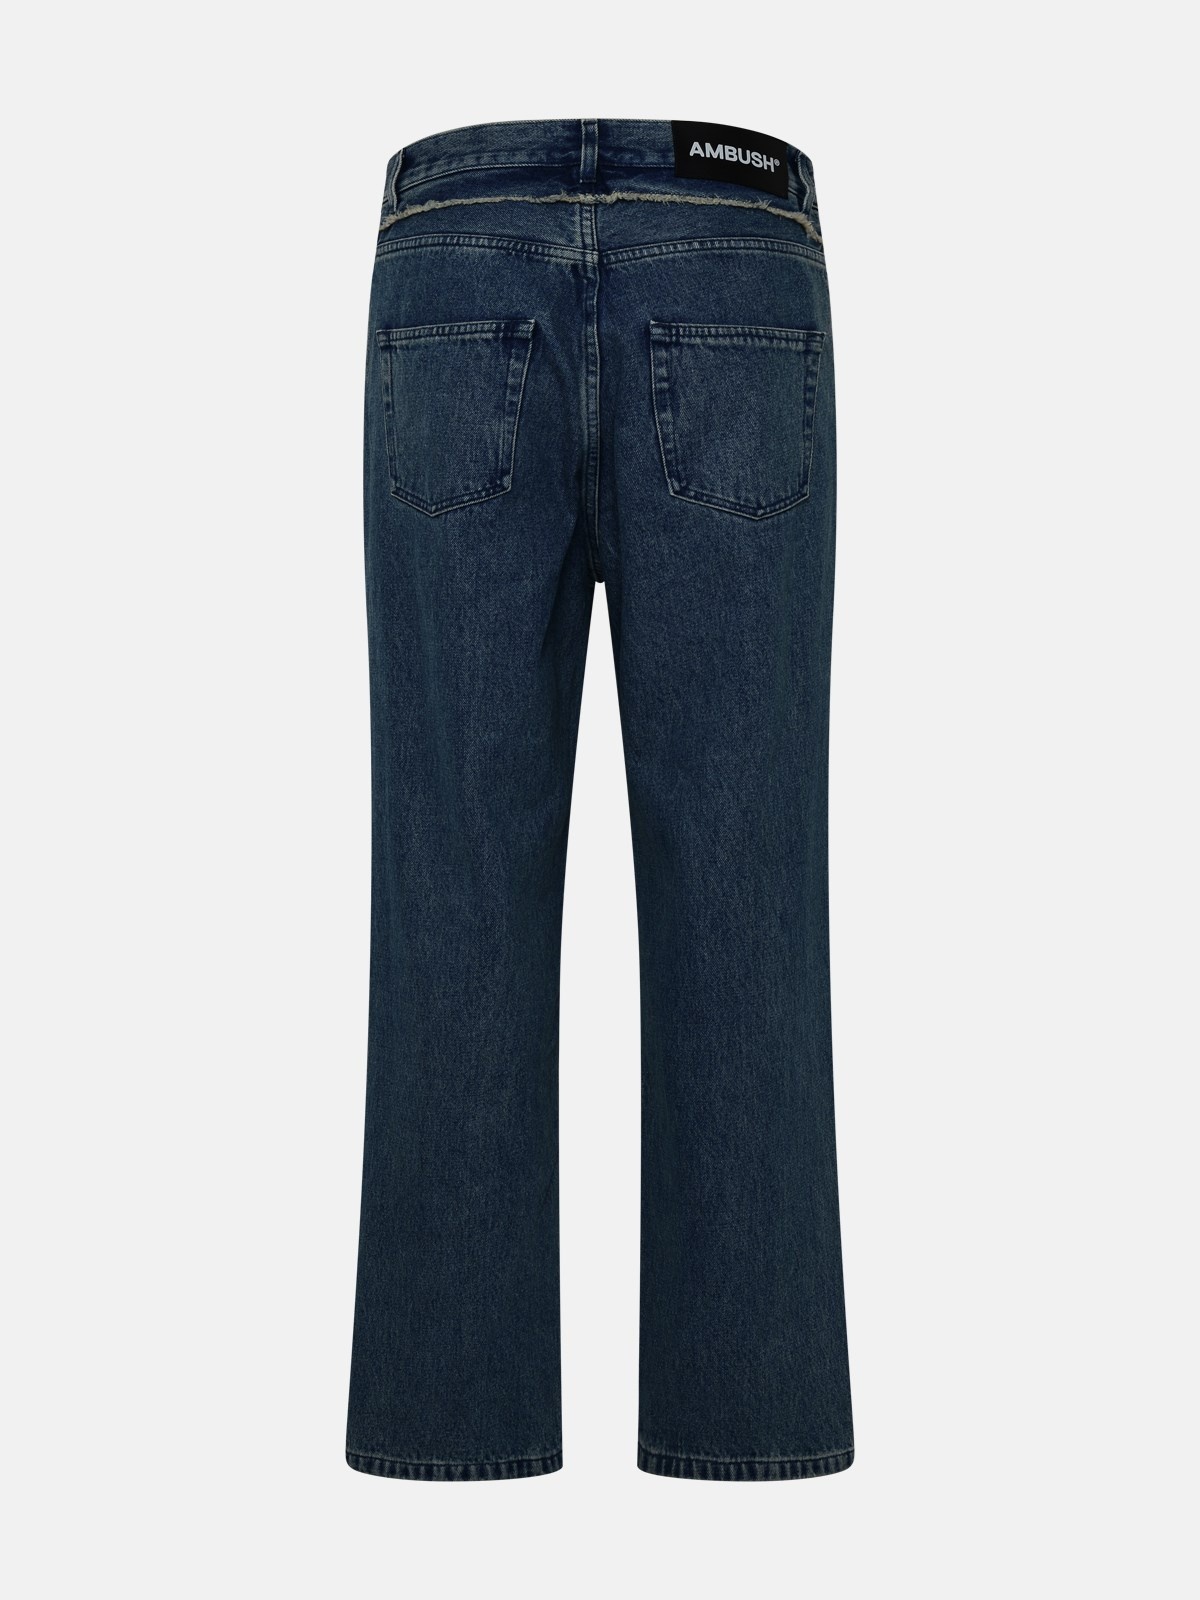 Blue cotton jeans - 3